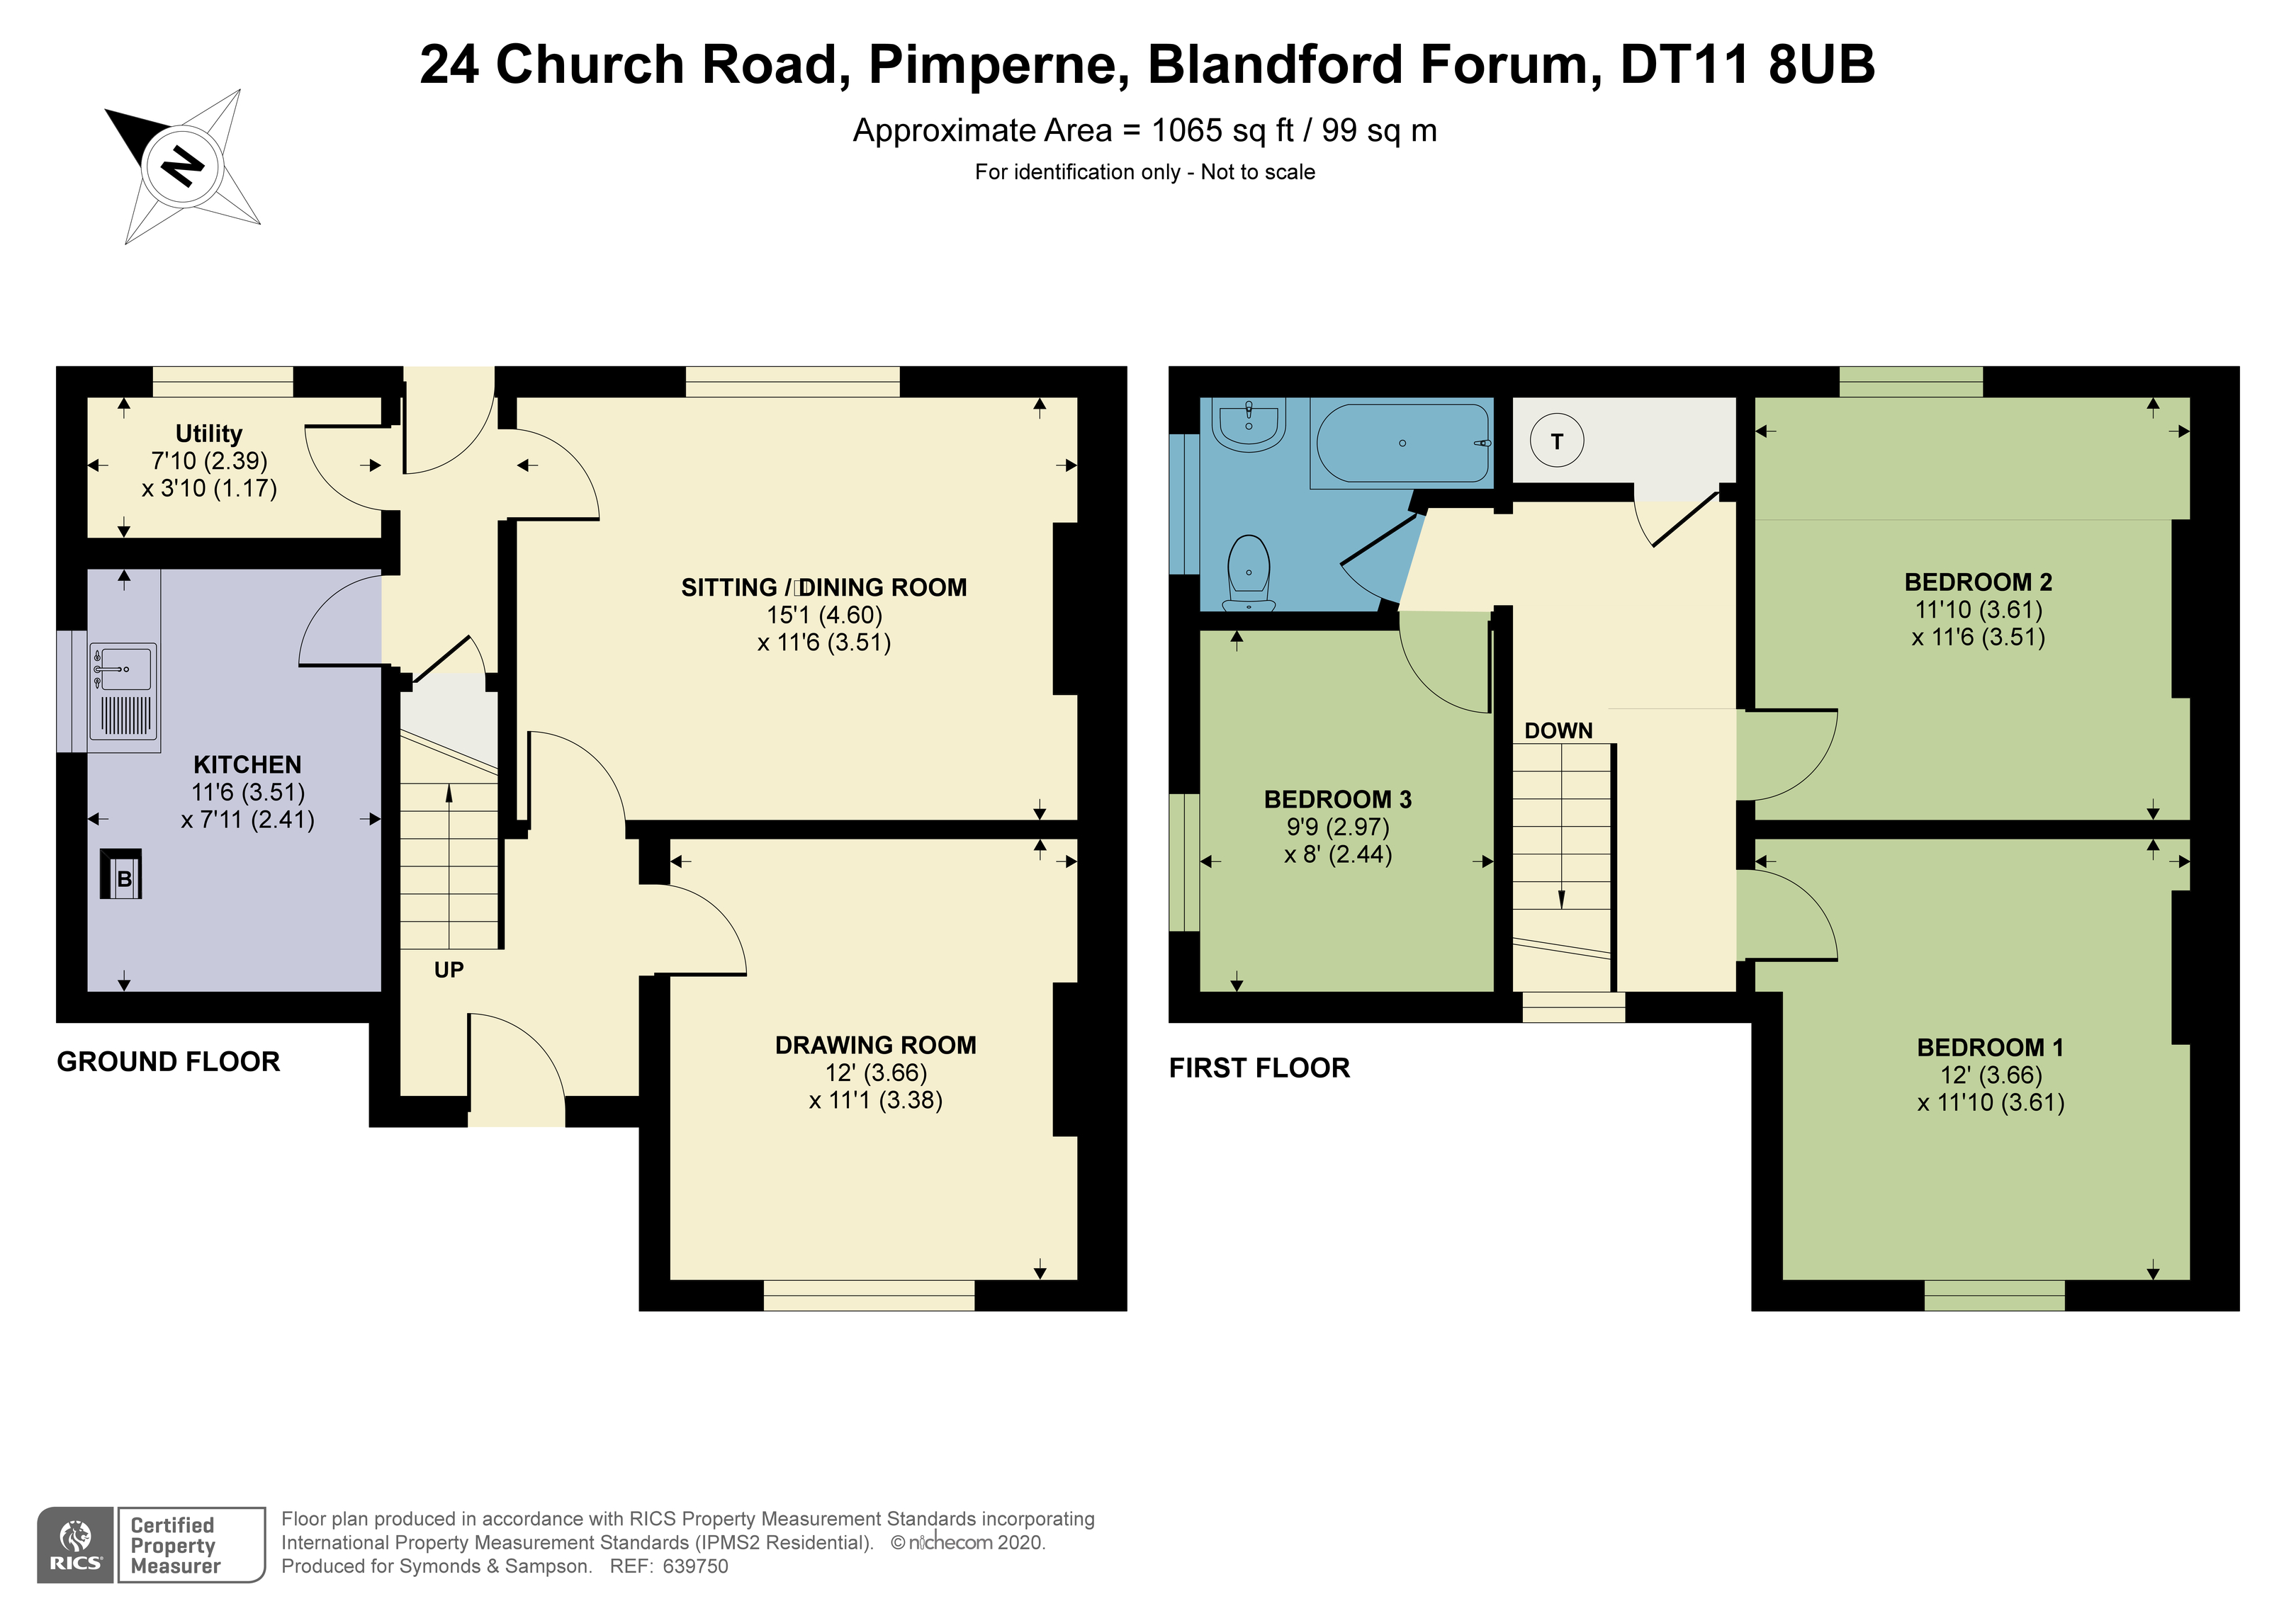 Floorplan - Church Road, Pimperne, Blandford Forum, DT11 8UB